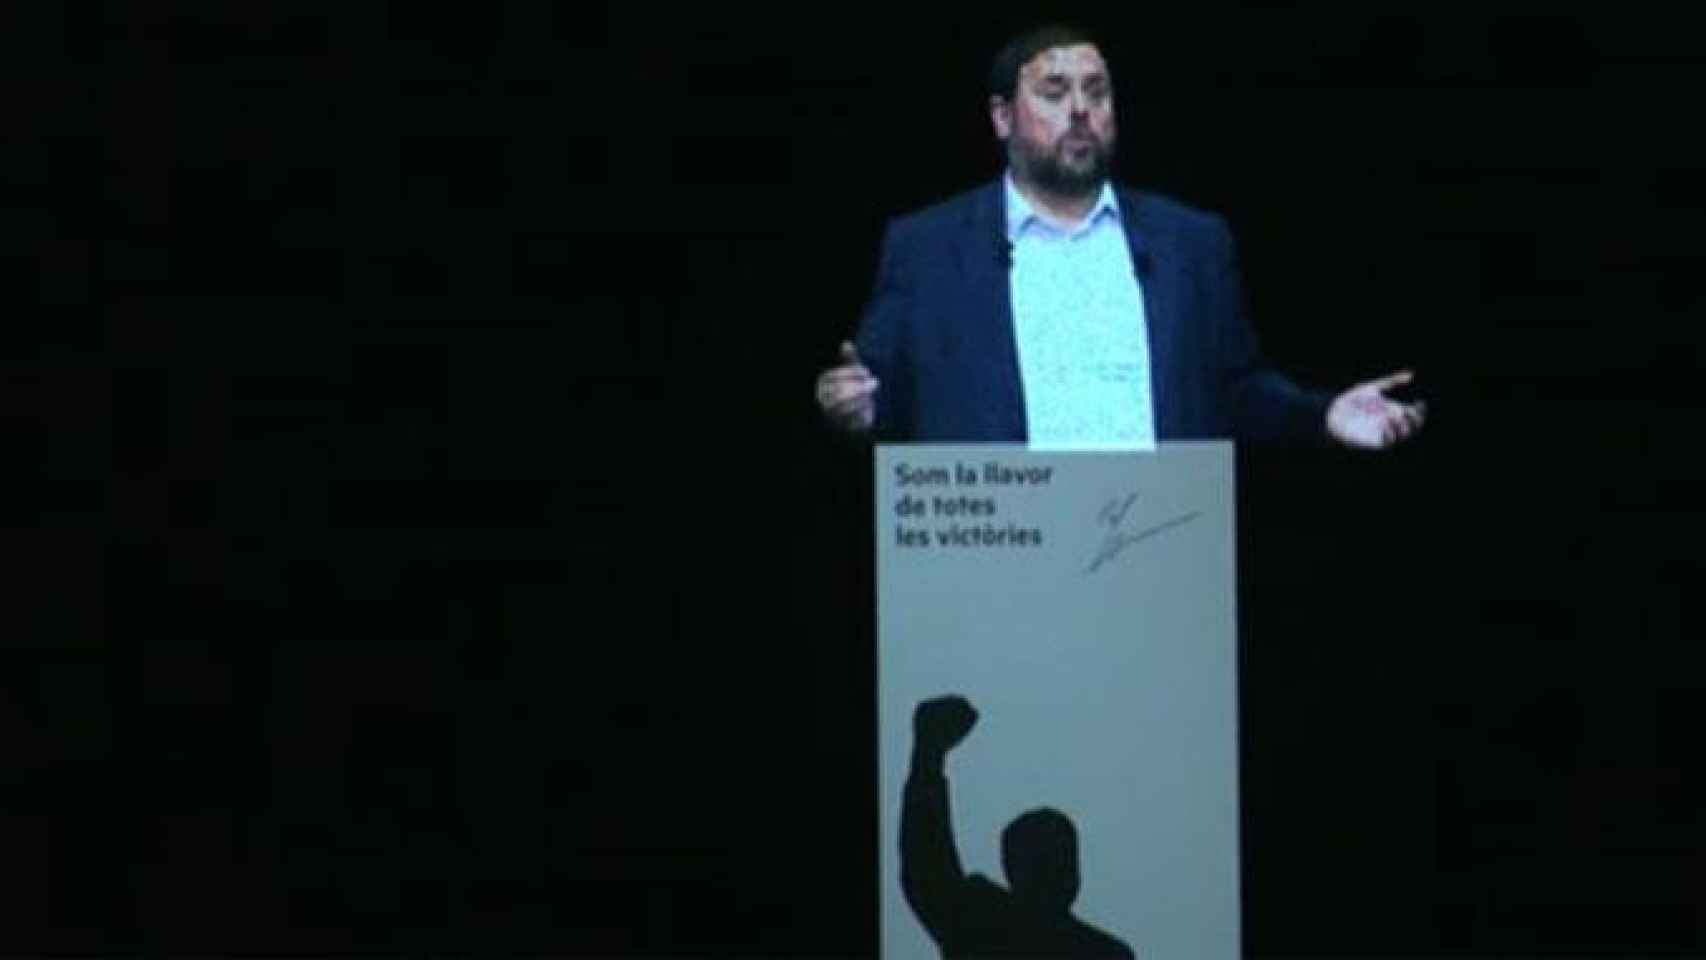 El holograma de Oriol Junqueras durante su conferencia política en Barcelona